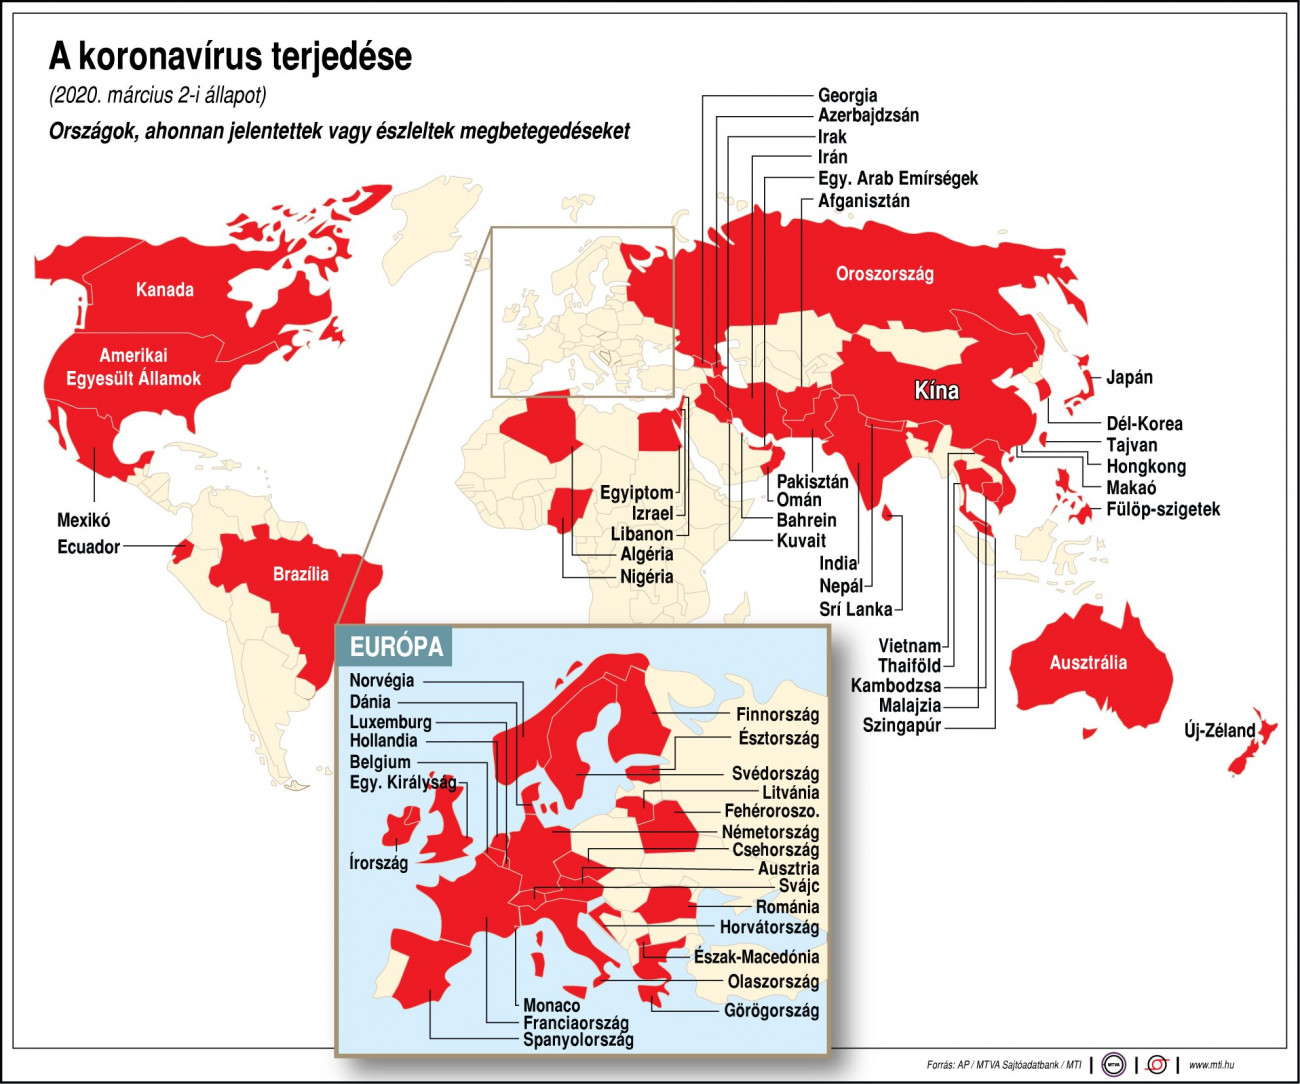 Országok, ahonnan jelentettek vagy észleltek megbetegedéseket